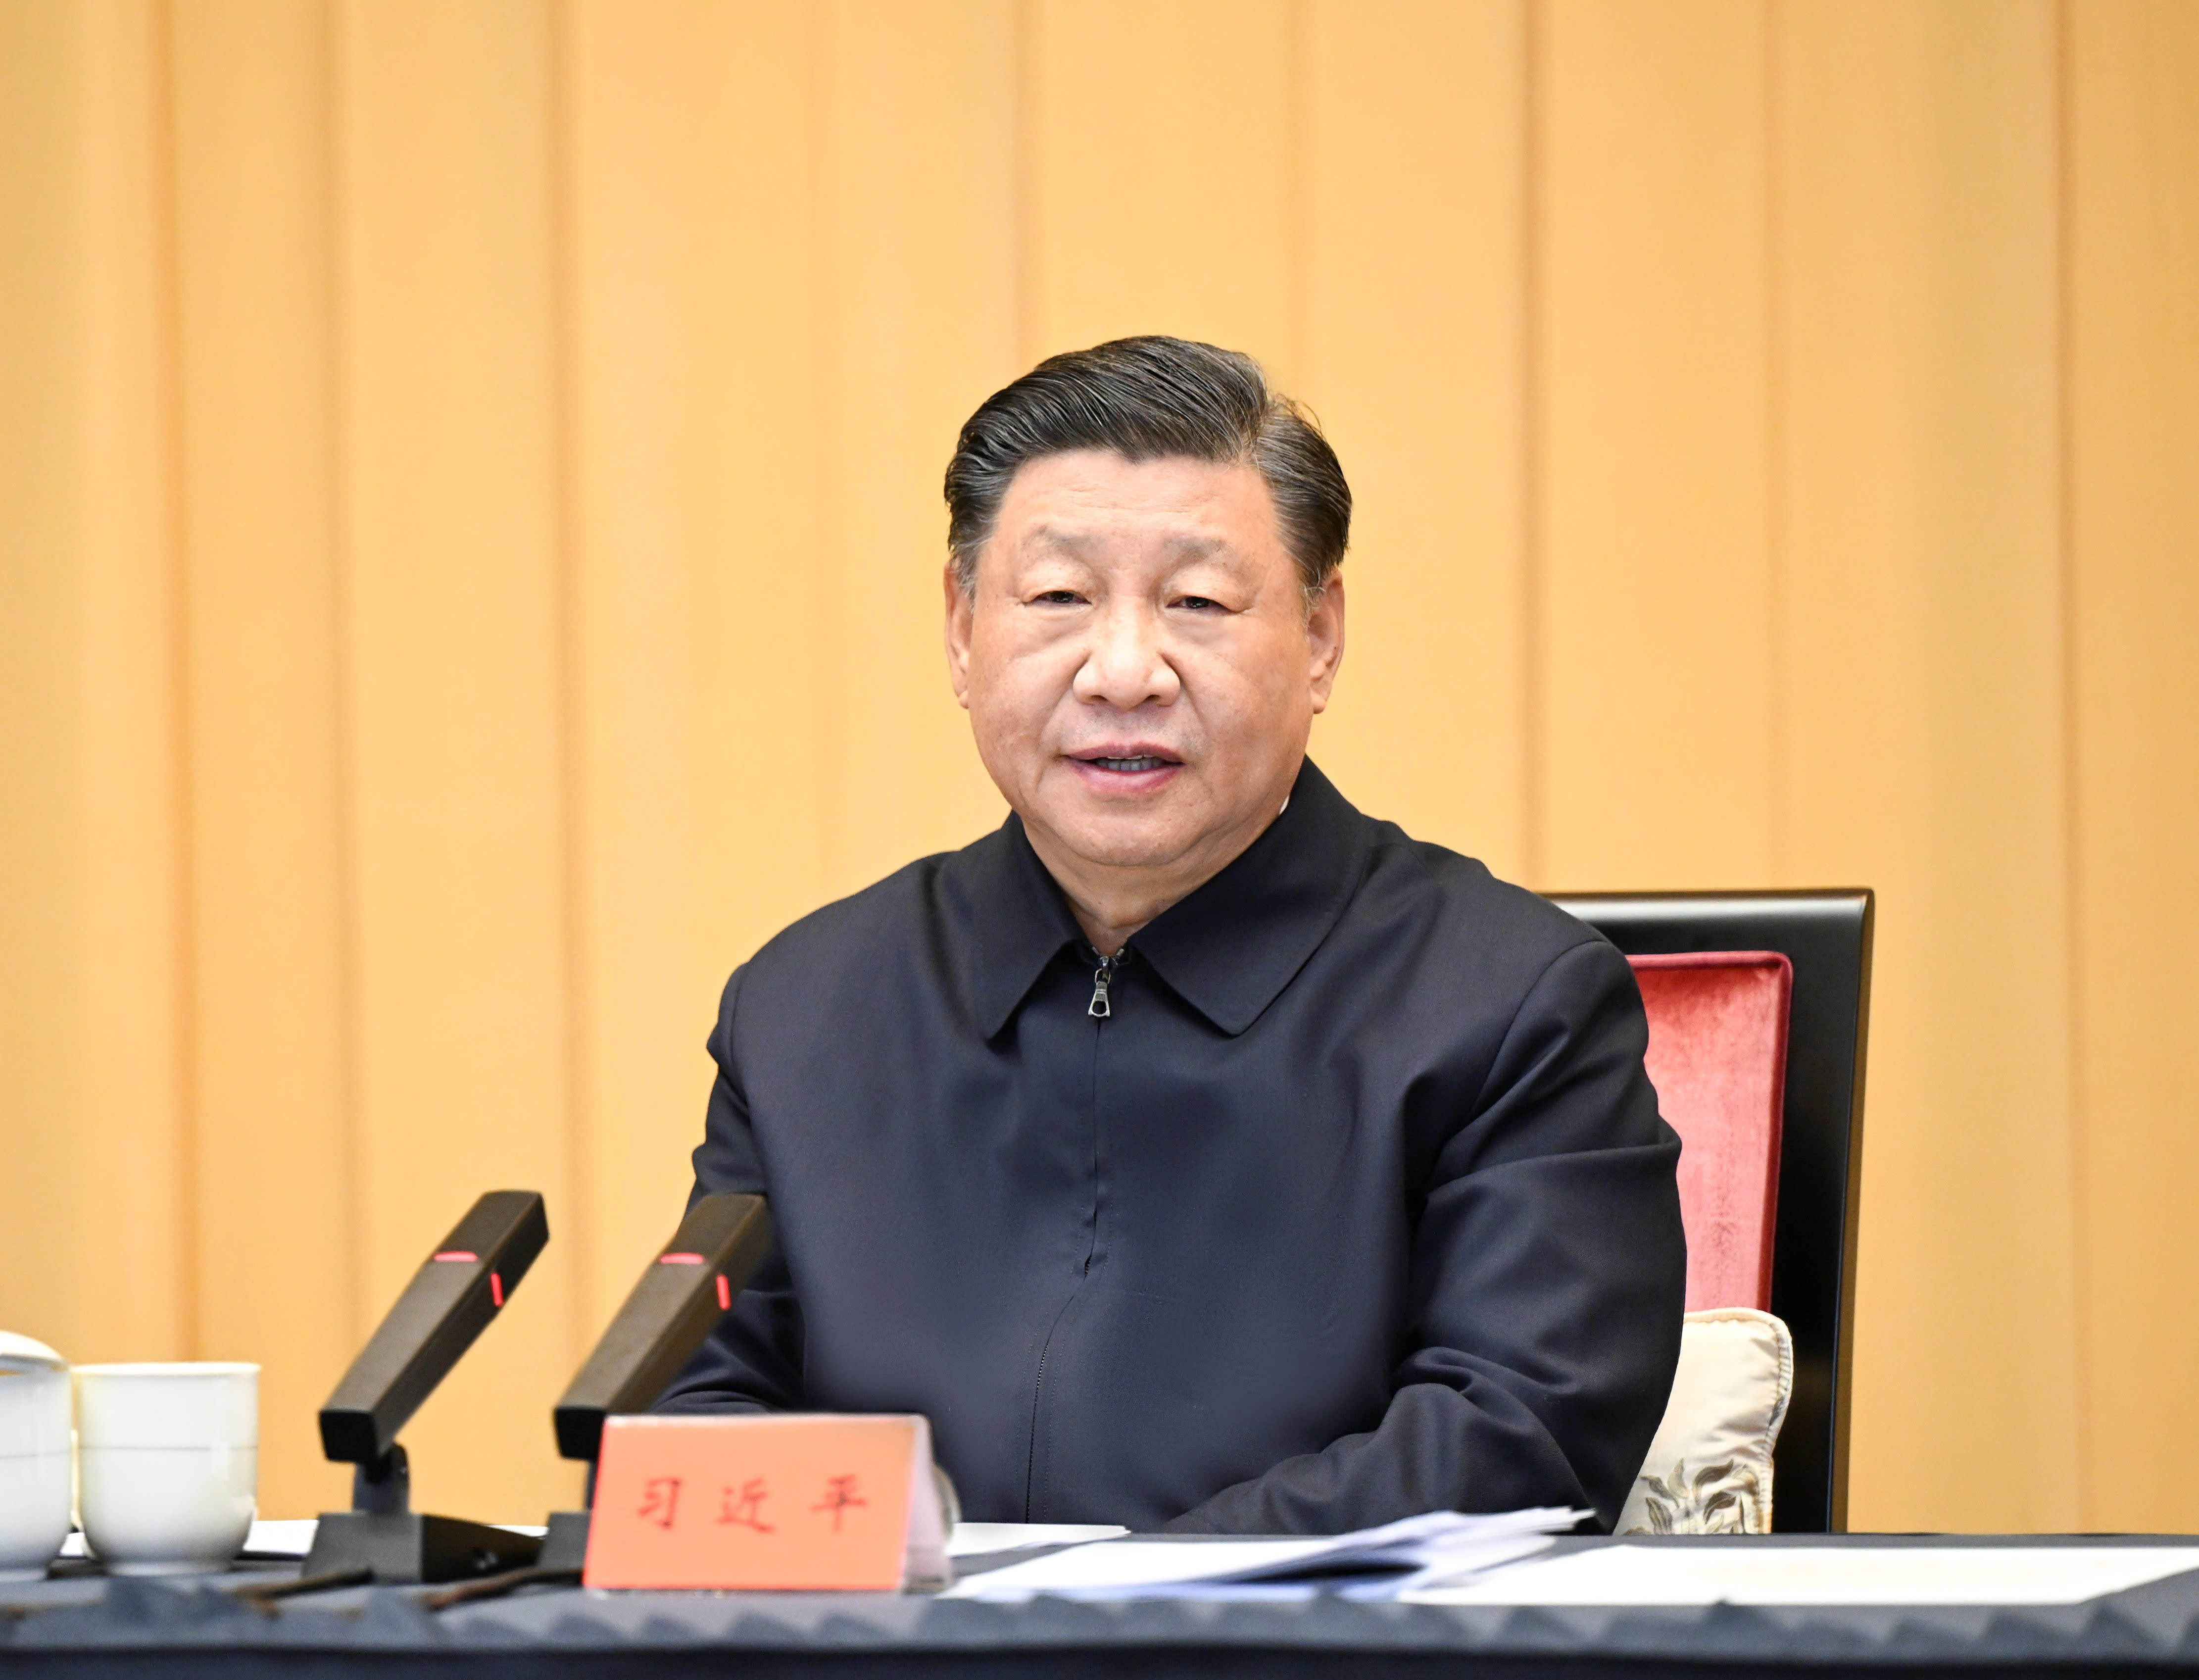 中国表示财政政策应适度加强